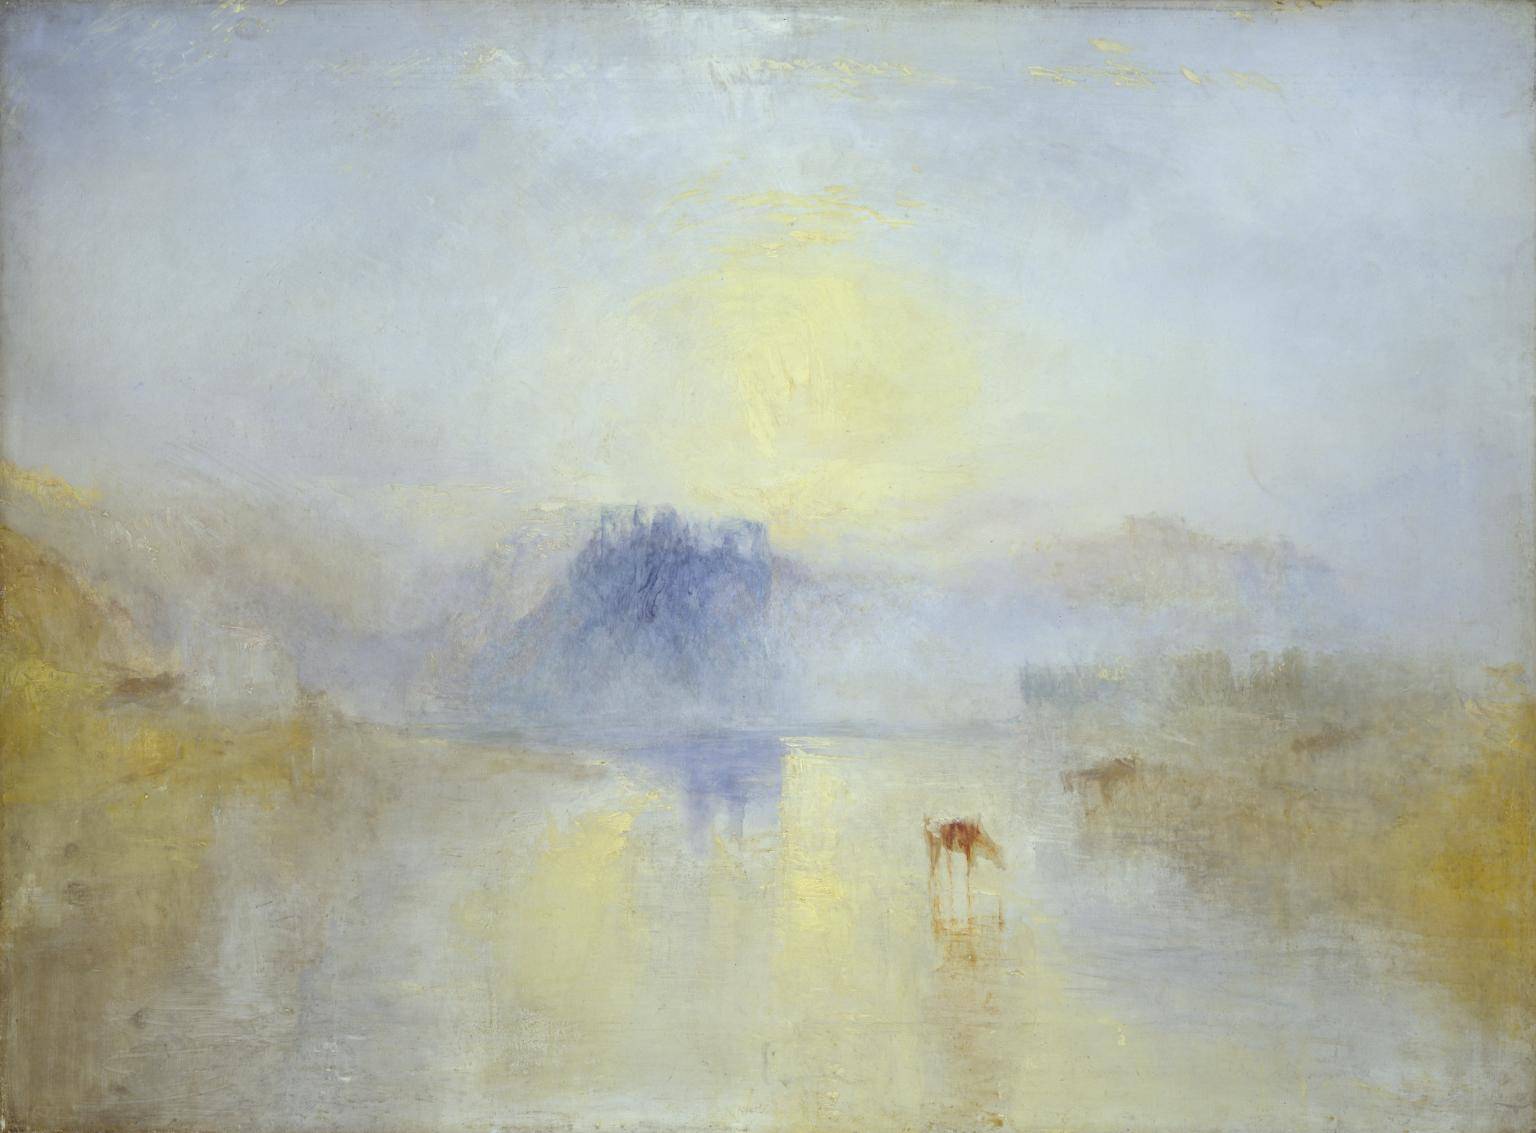 J. M. W. Turner (1845)